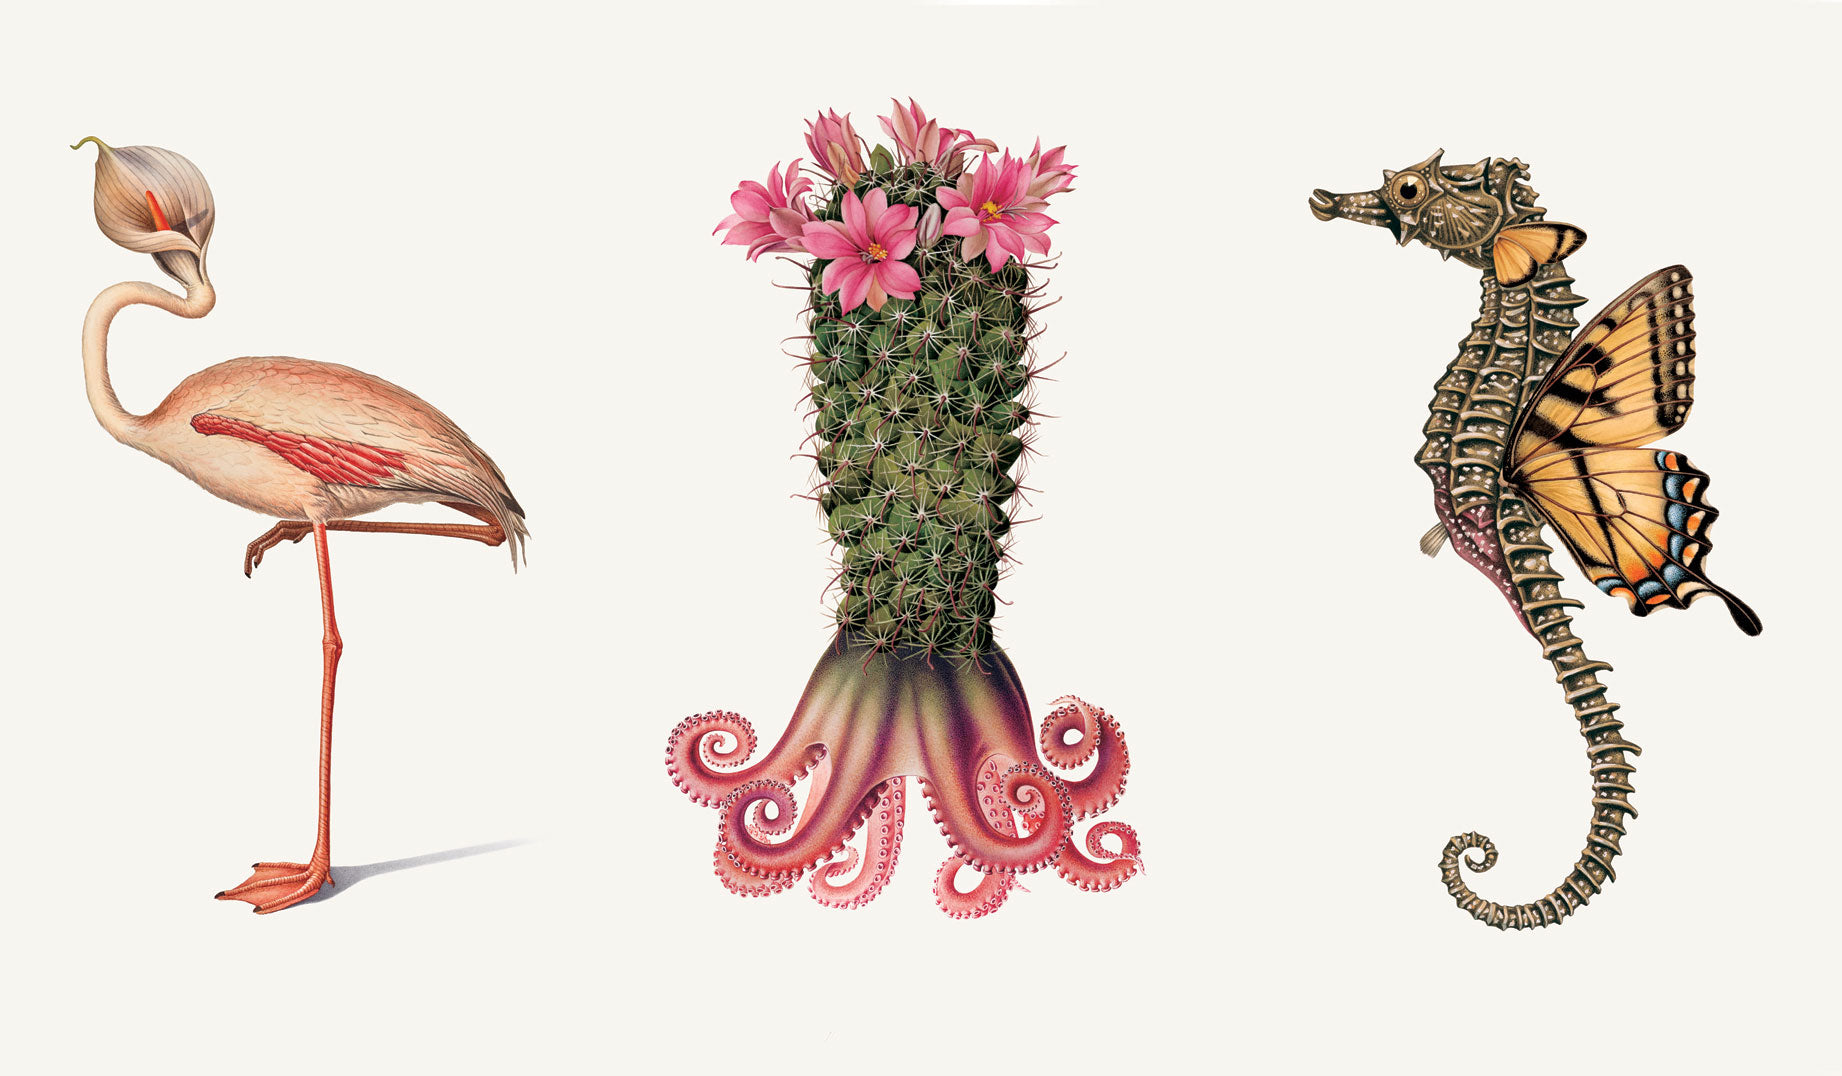 Effectivae Managerum (flamingo), Maximus Designex (cactus), and Innovato Ideatis (seahorse)